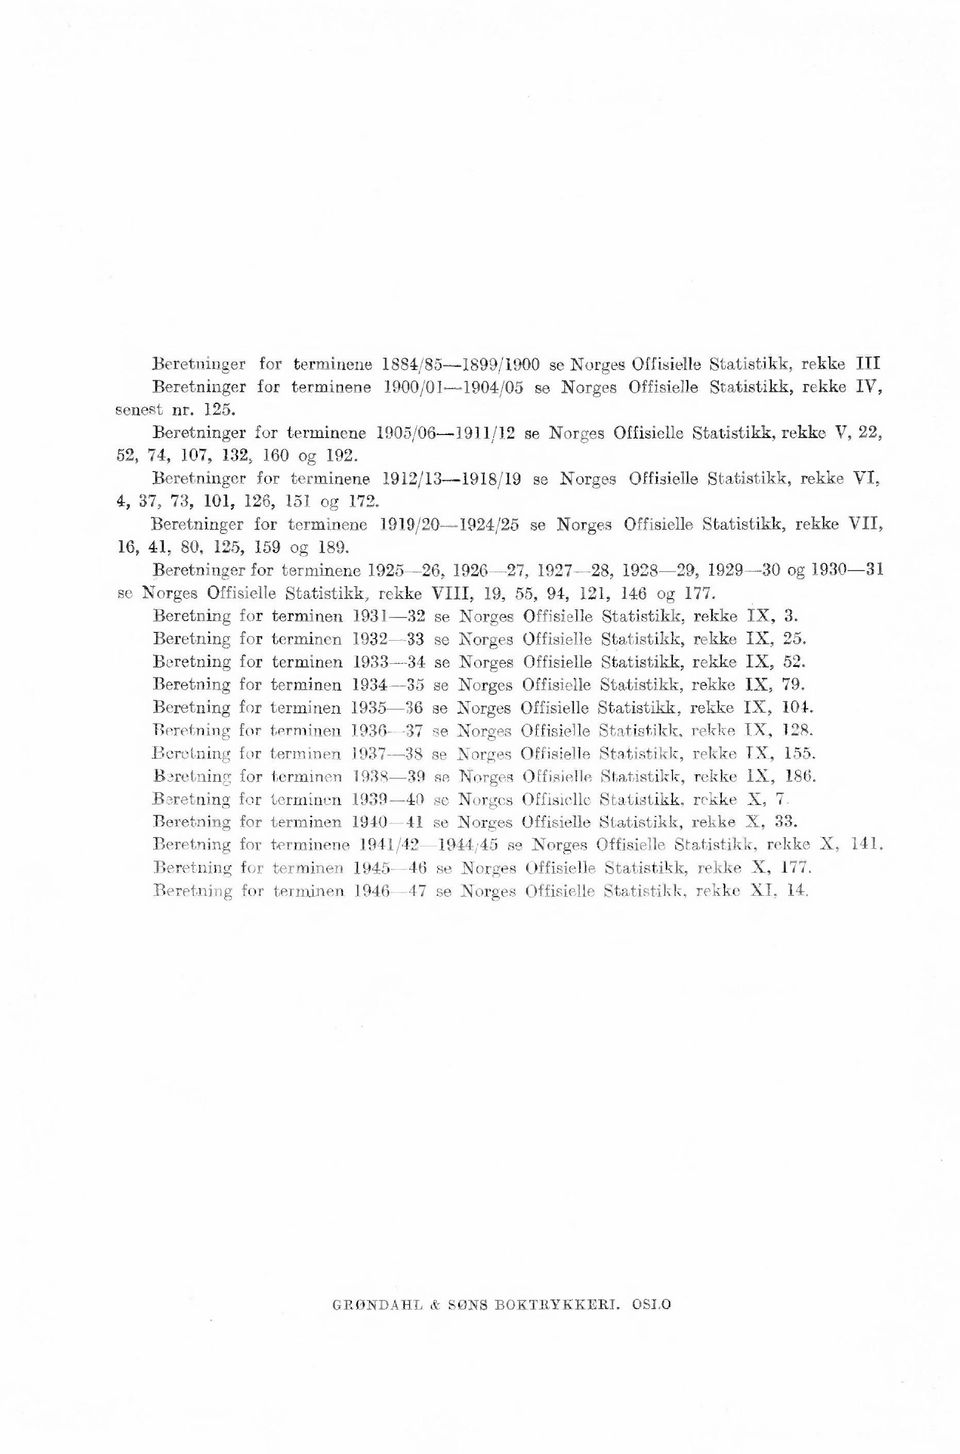 Beretninger for terminene 1912/13-1918/19 se Norges Offisielle Statistikk, rekke VI, 4, 37, 73, 11, 126, 151 og 172.